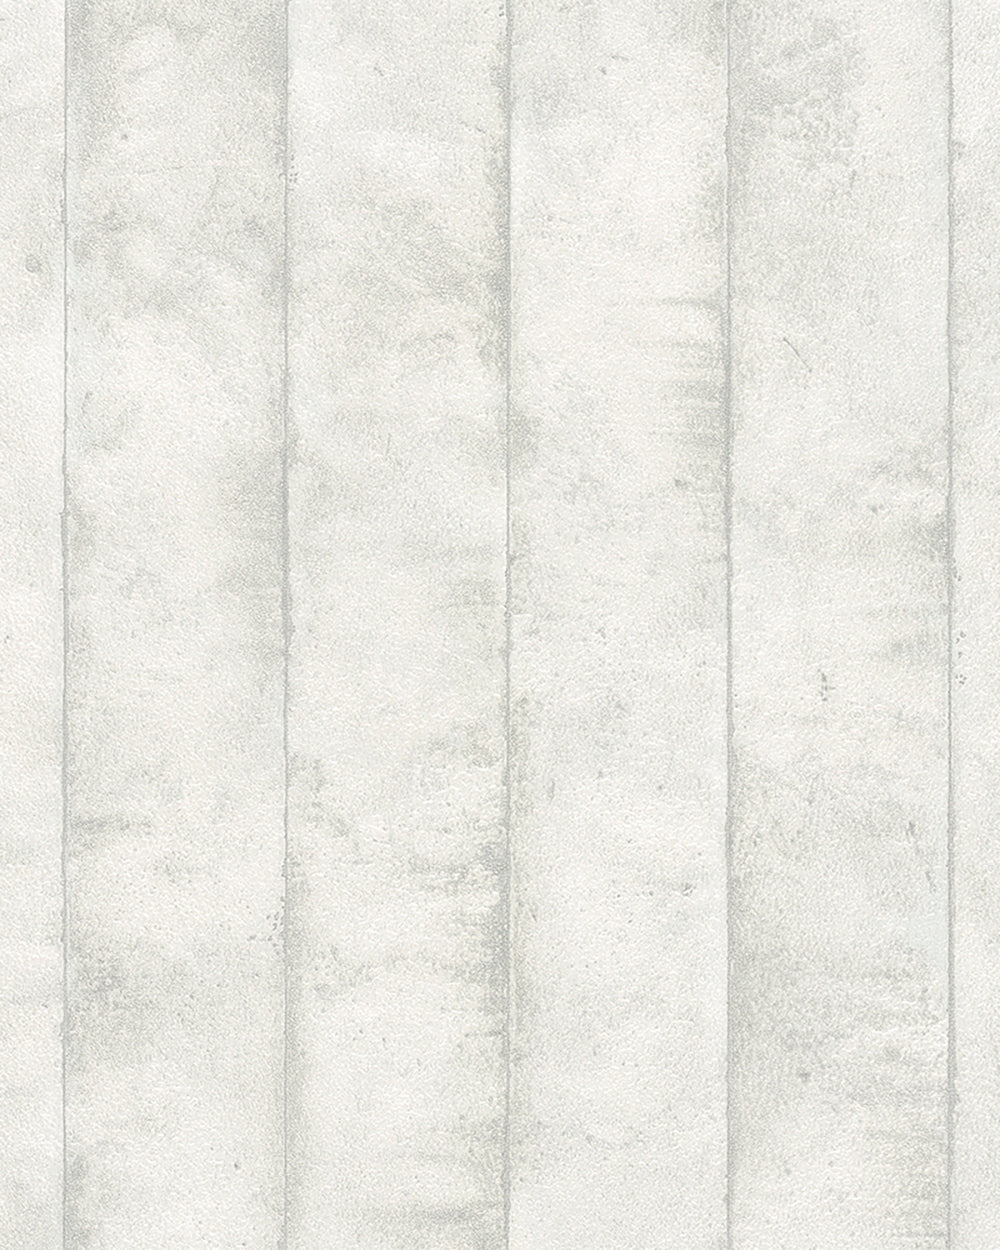 Avalon - Textured Concrete Panels industrial wallpaper Marburg Roll Dark Cream  31615